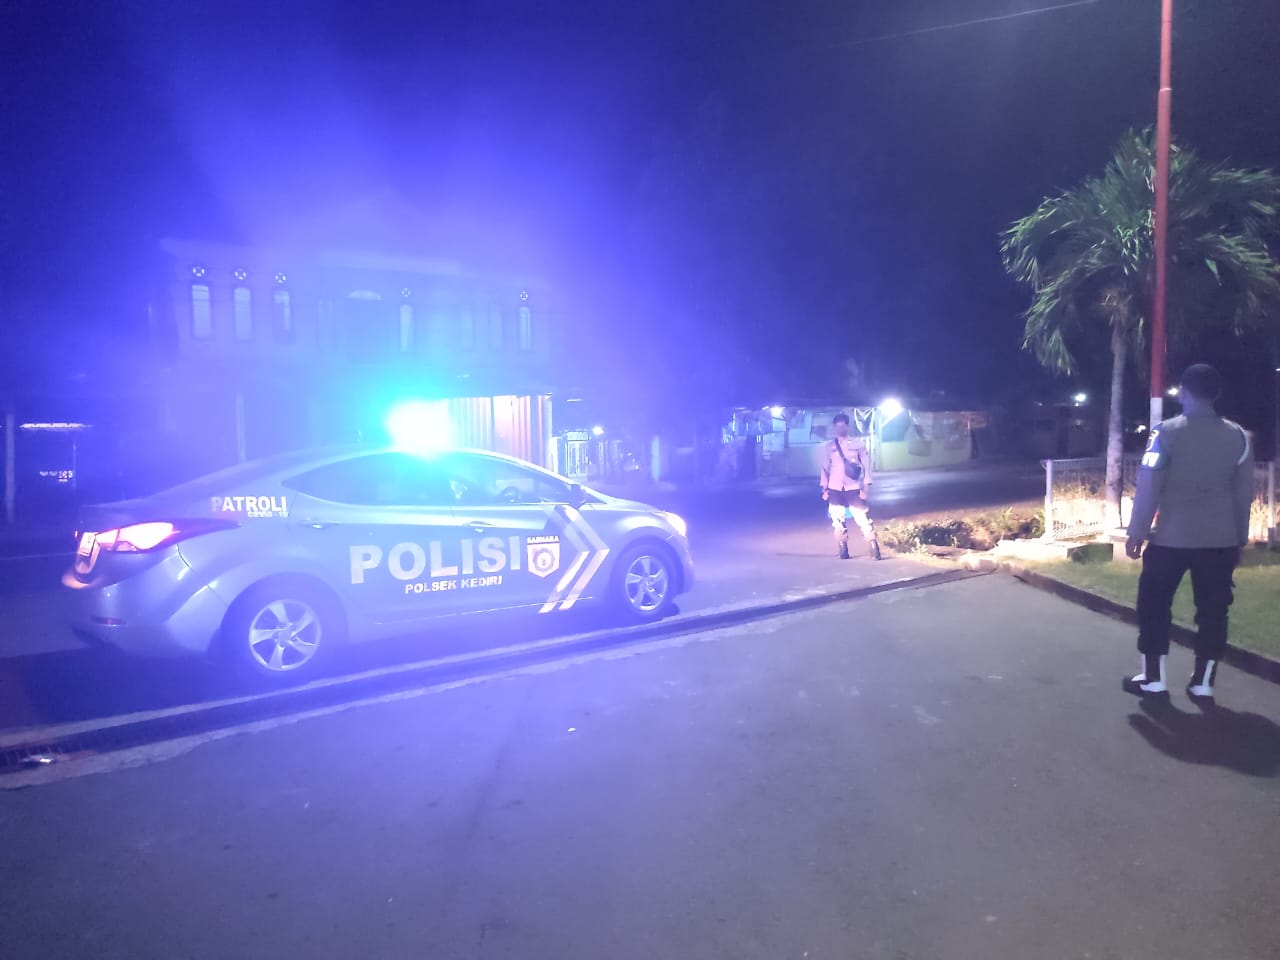 Patroli malam Polsek Kediri, Sisir Sepanjang jalan Tgh. Ibrahim Al-Khalidy di Kediri